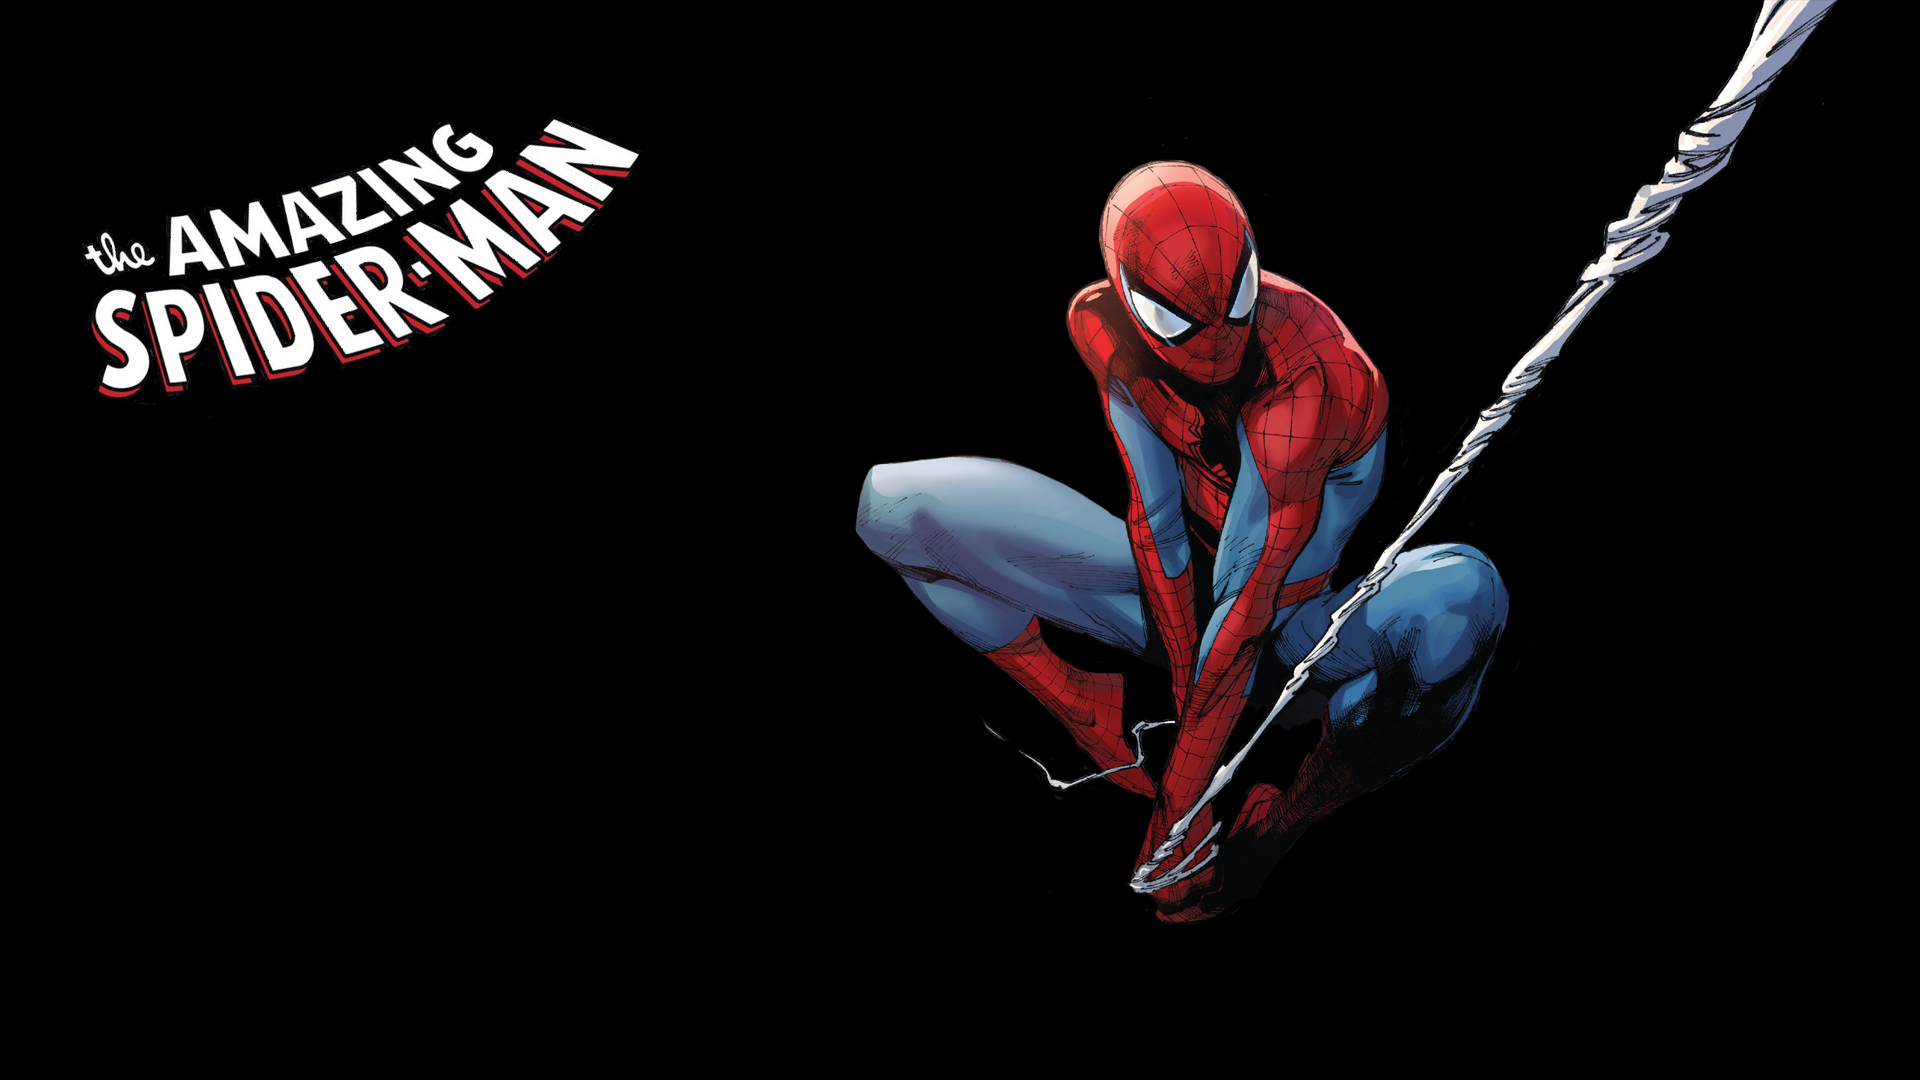 spiderman wallpaper hd,spider man,erfundener charakter,menschlicher körper,superheld,grafikdesign